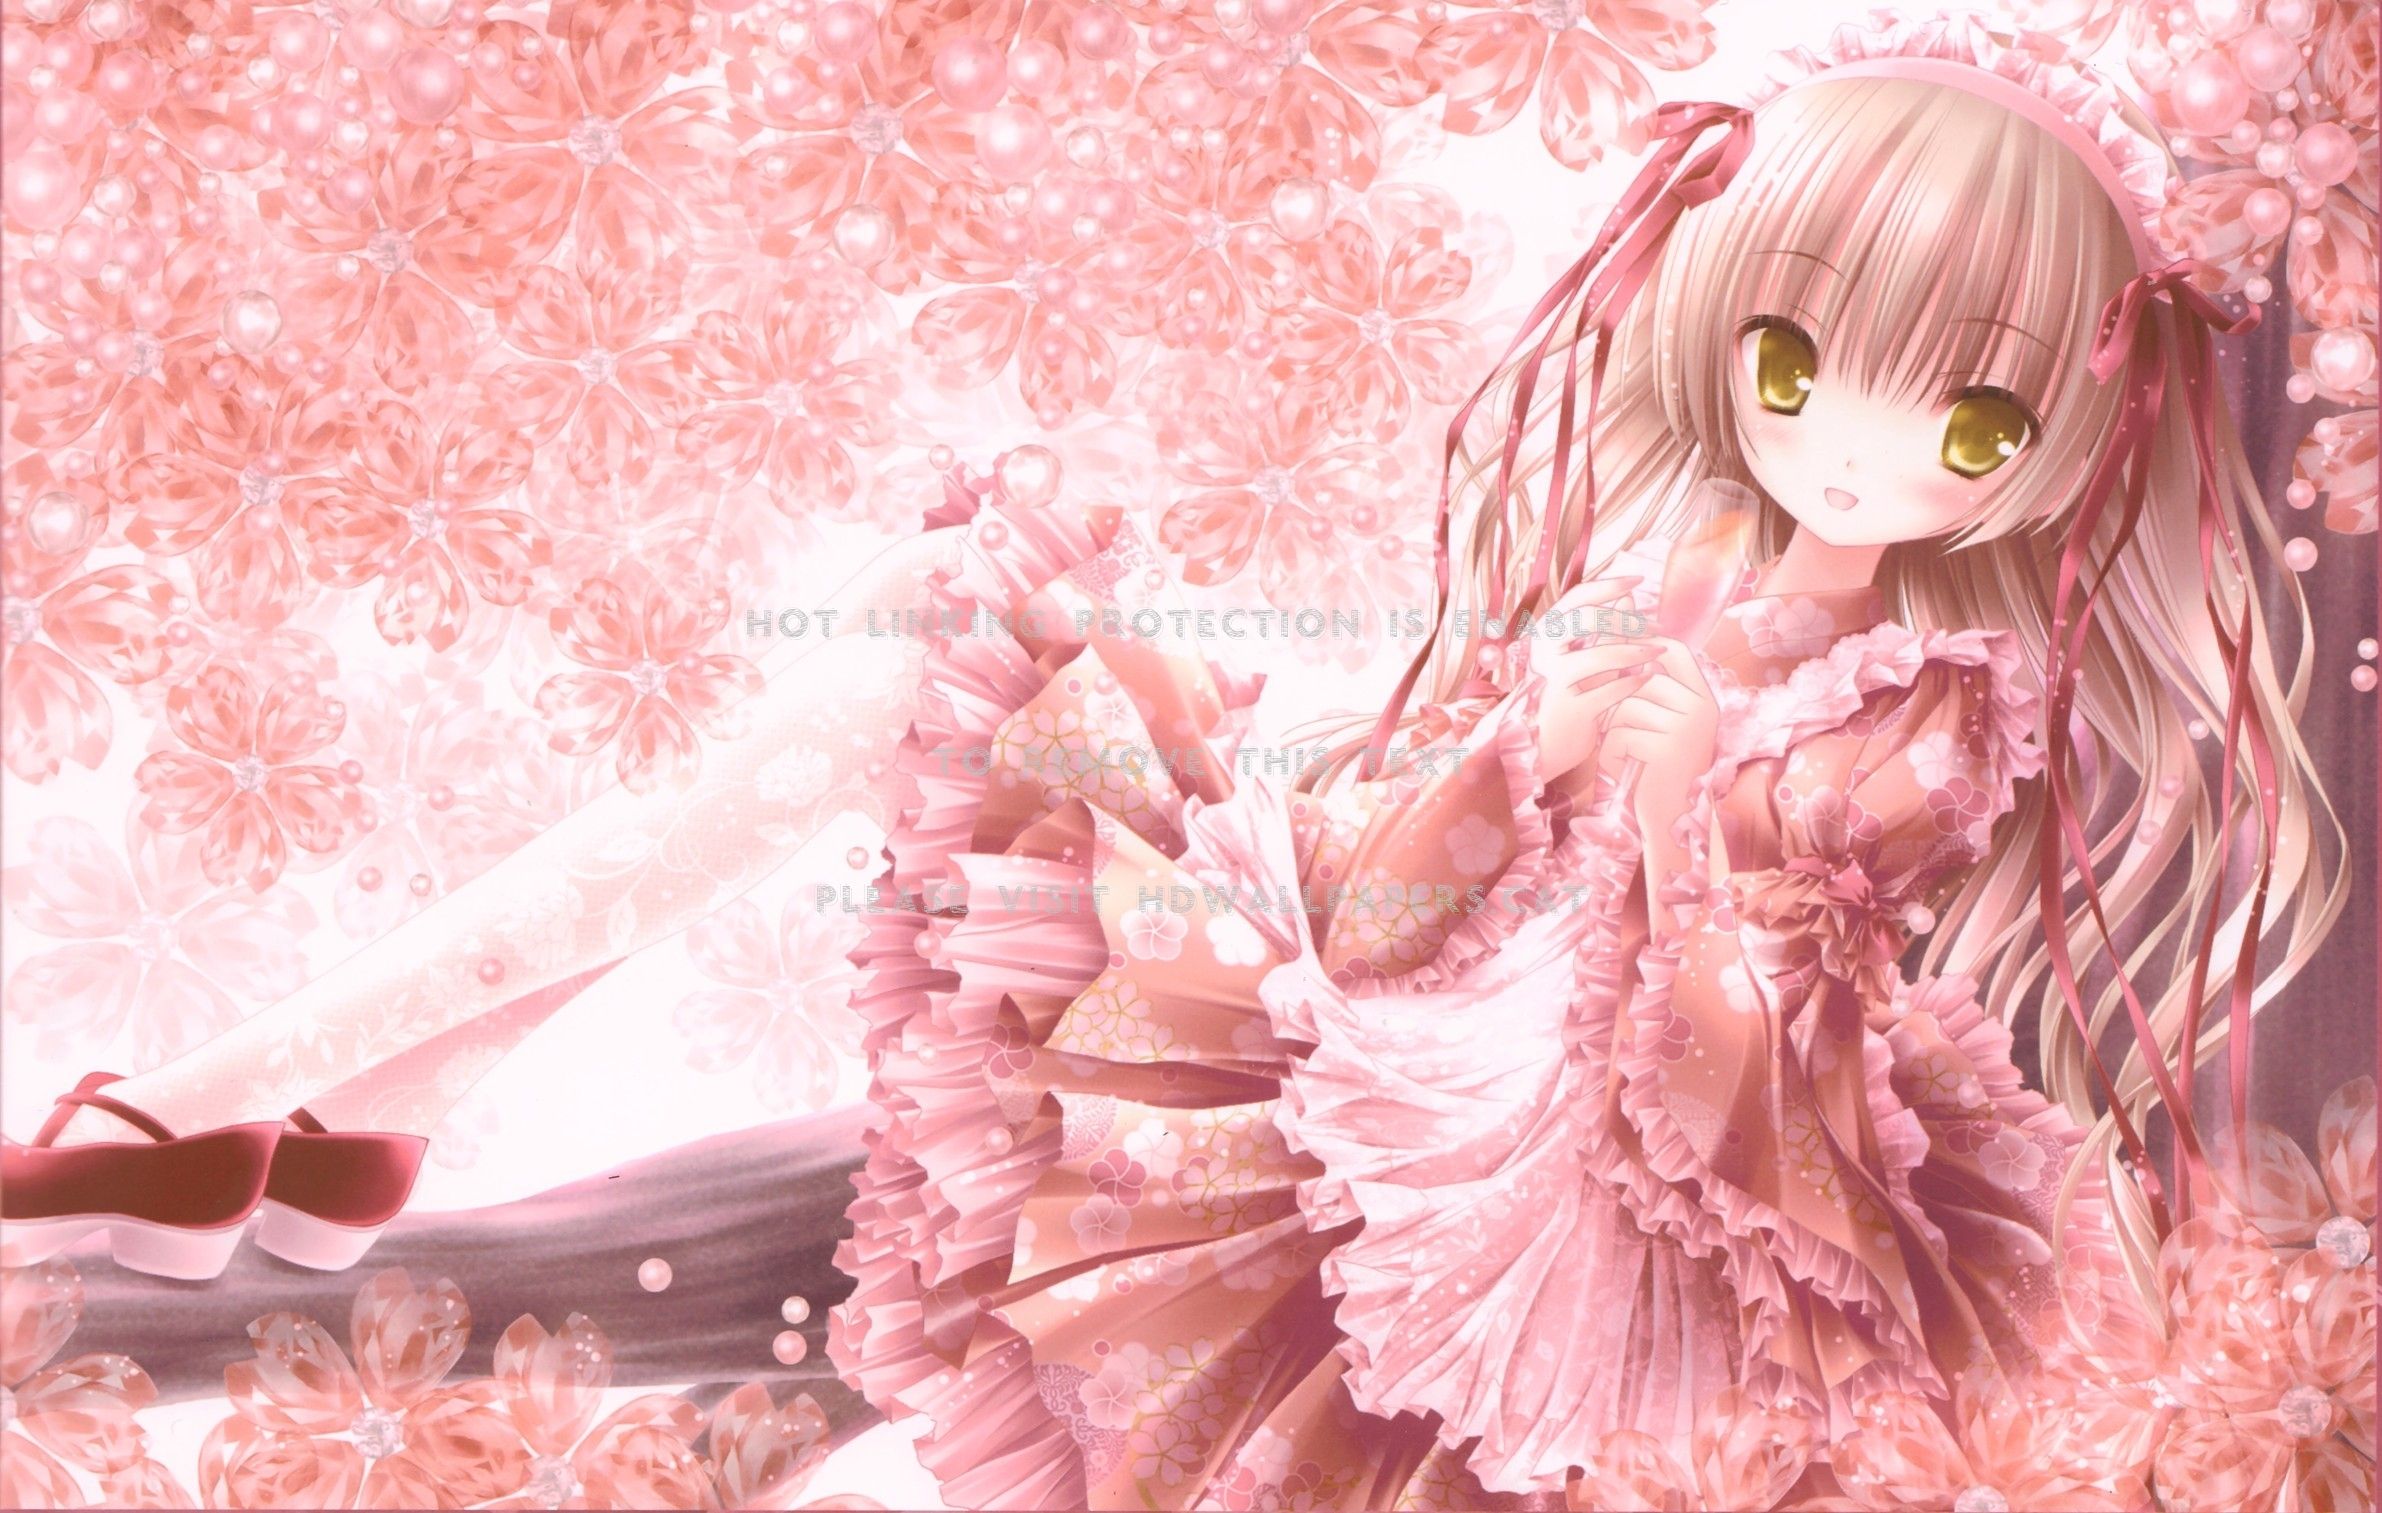 lolita fashion manga girl spring pink anime